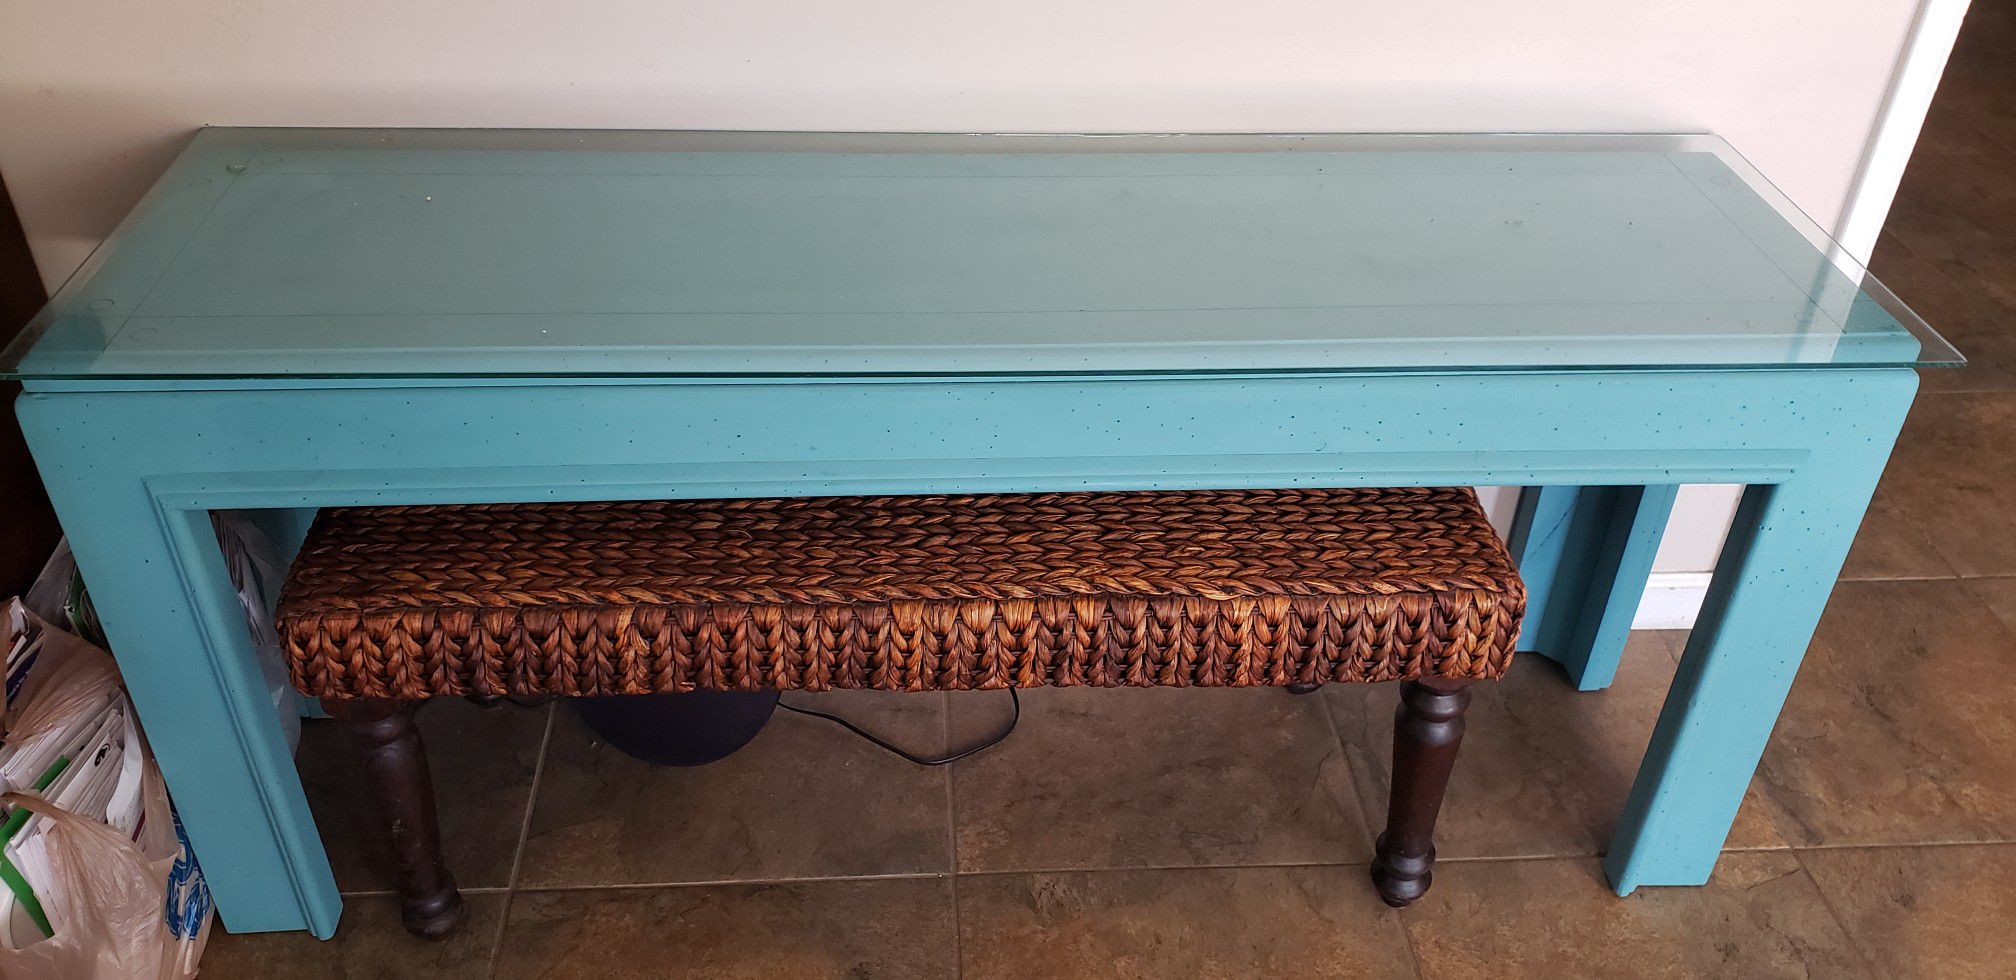 Custom painted table